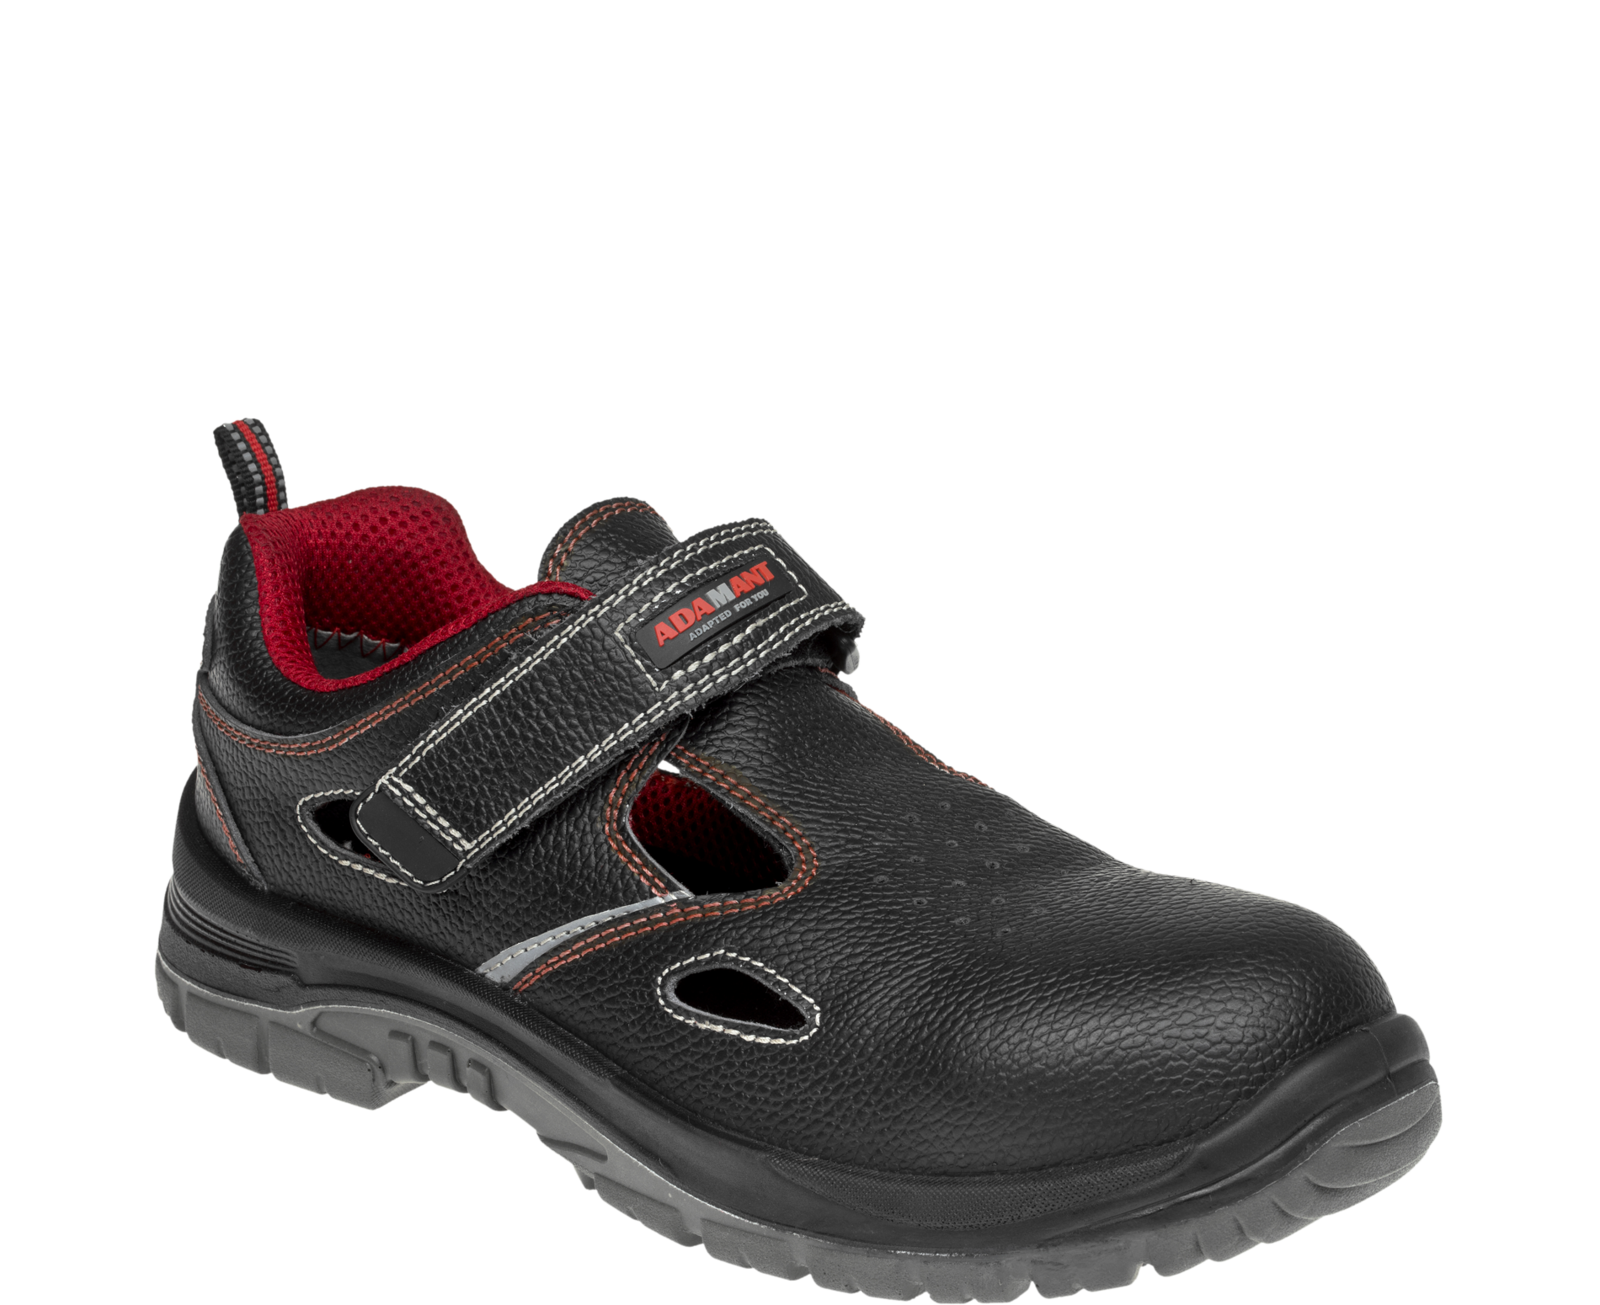 Bezpečnostné sandále Adamant Non Metallic S1 SRC - veľkosť: 48, farba: čierna/červená